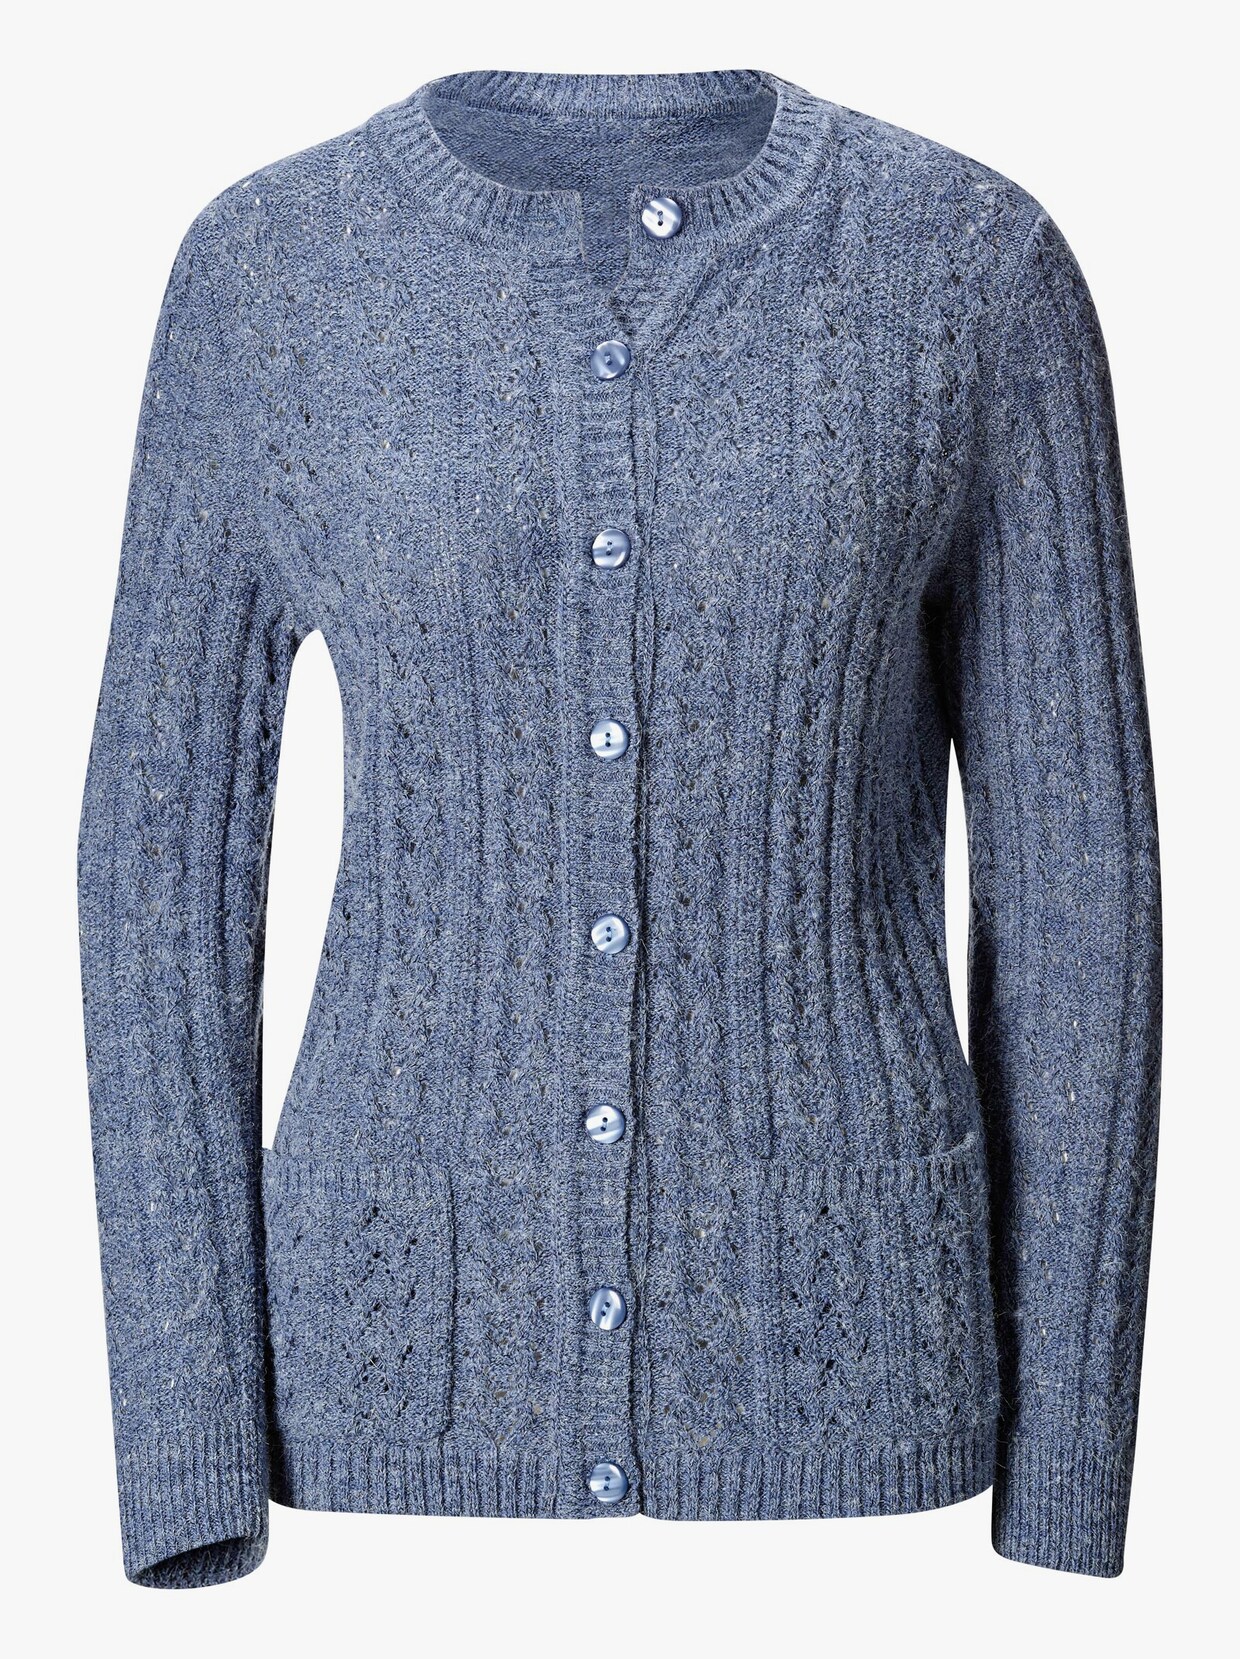 Pletený sveter - modrá melírovaná